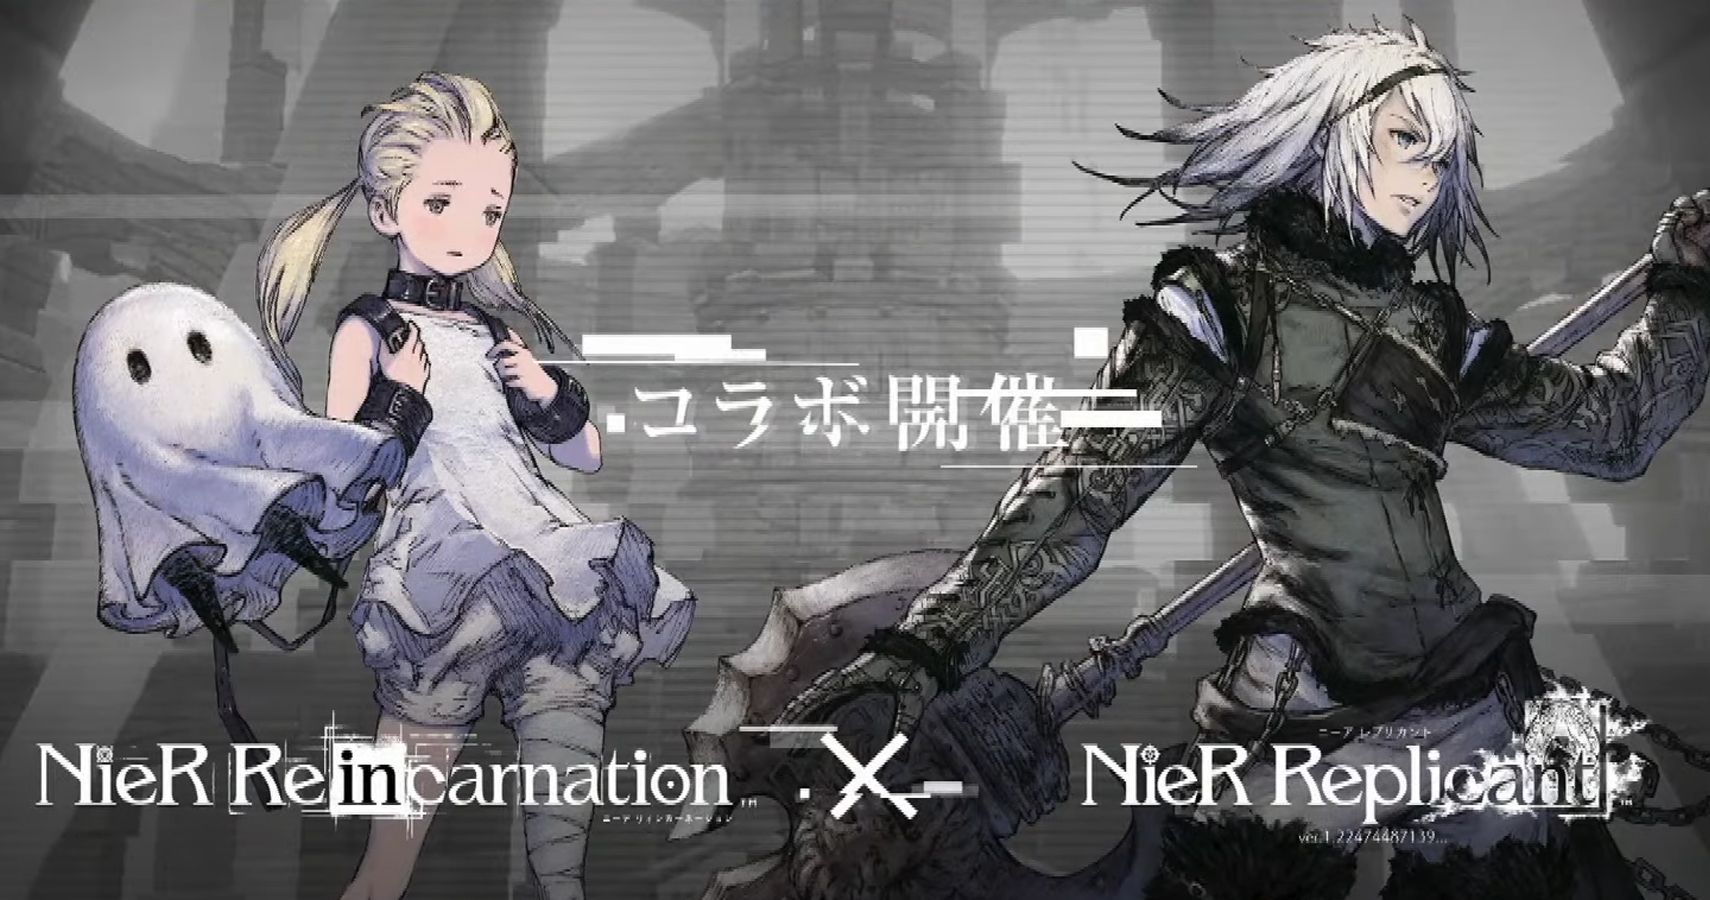 NieR Reincarnation Will Launch in Japan in February